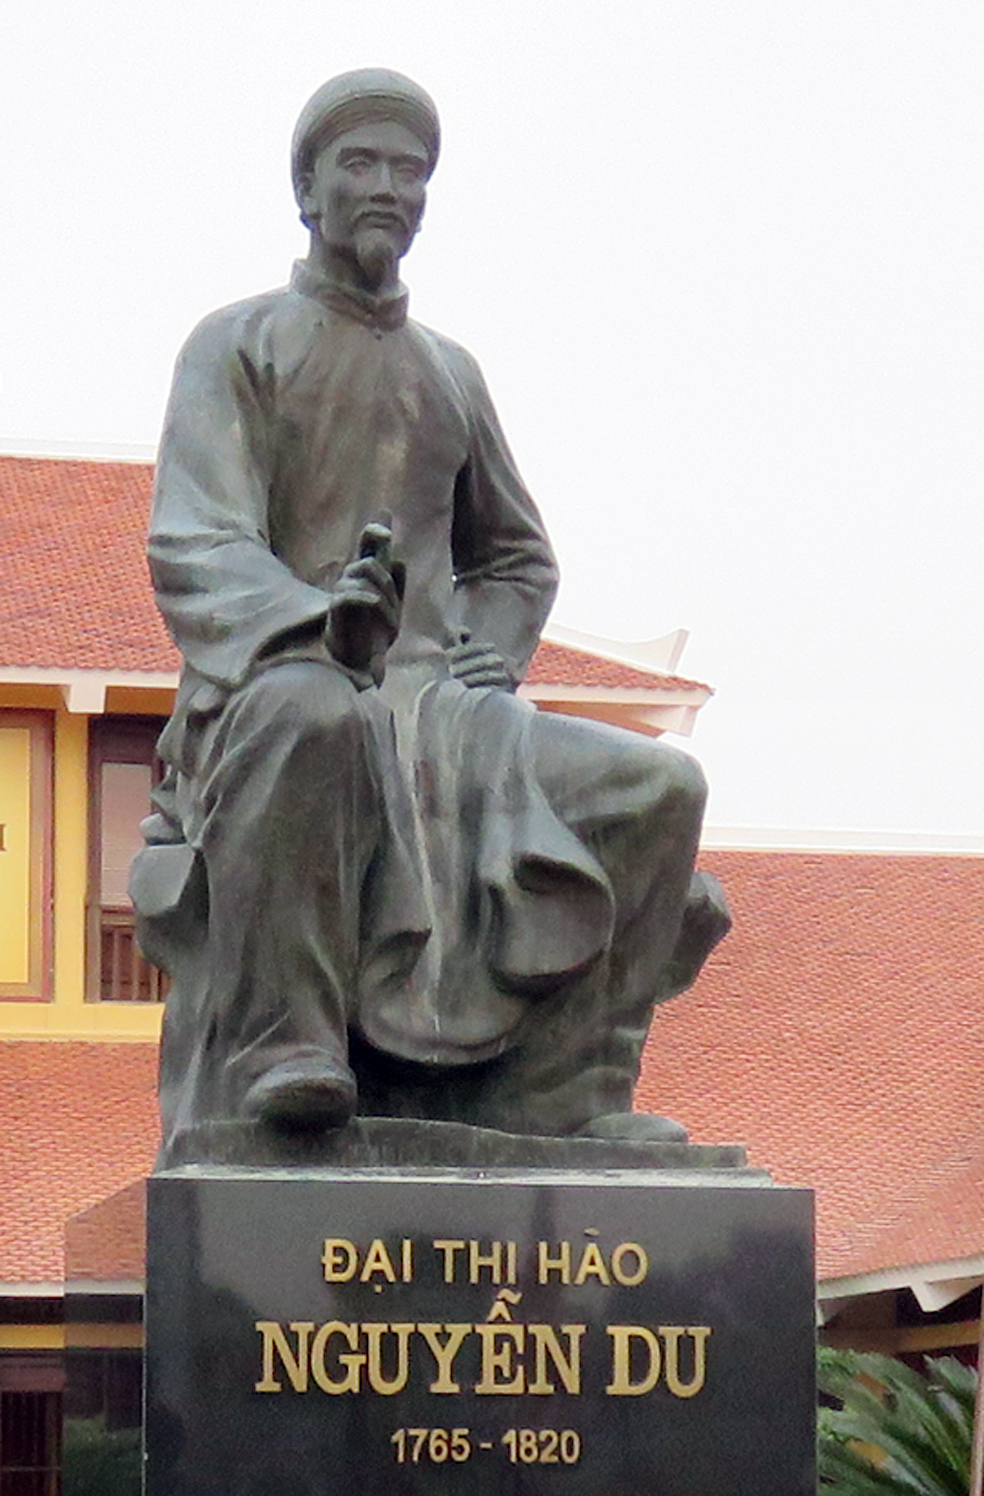 Tượng Đại thi hào Nguyễn Du tại khu lưu niệm ở quê hương của ông (Nghi Xuân, Hà Tĩnh)